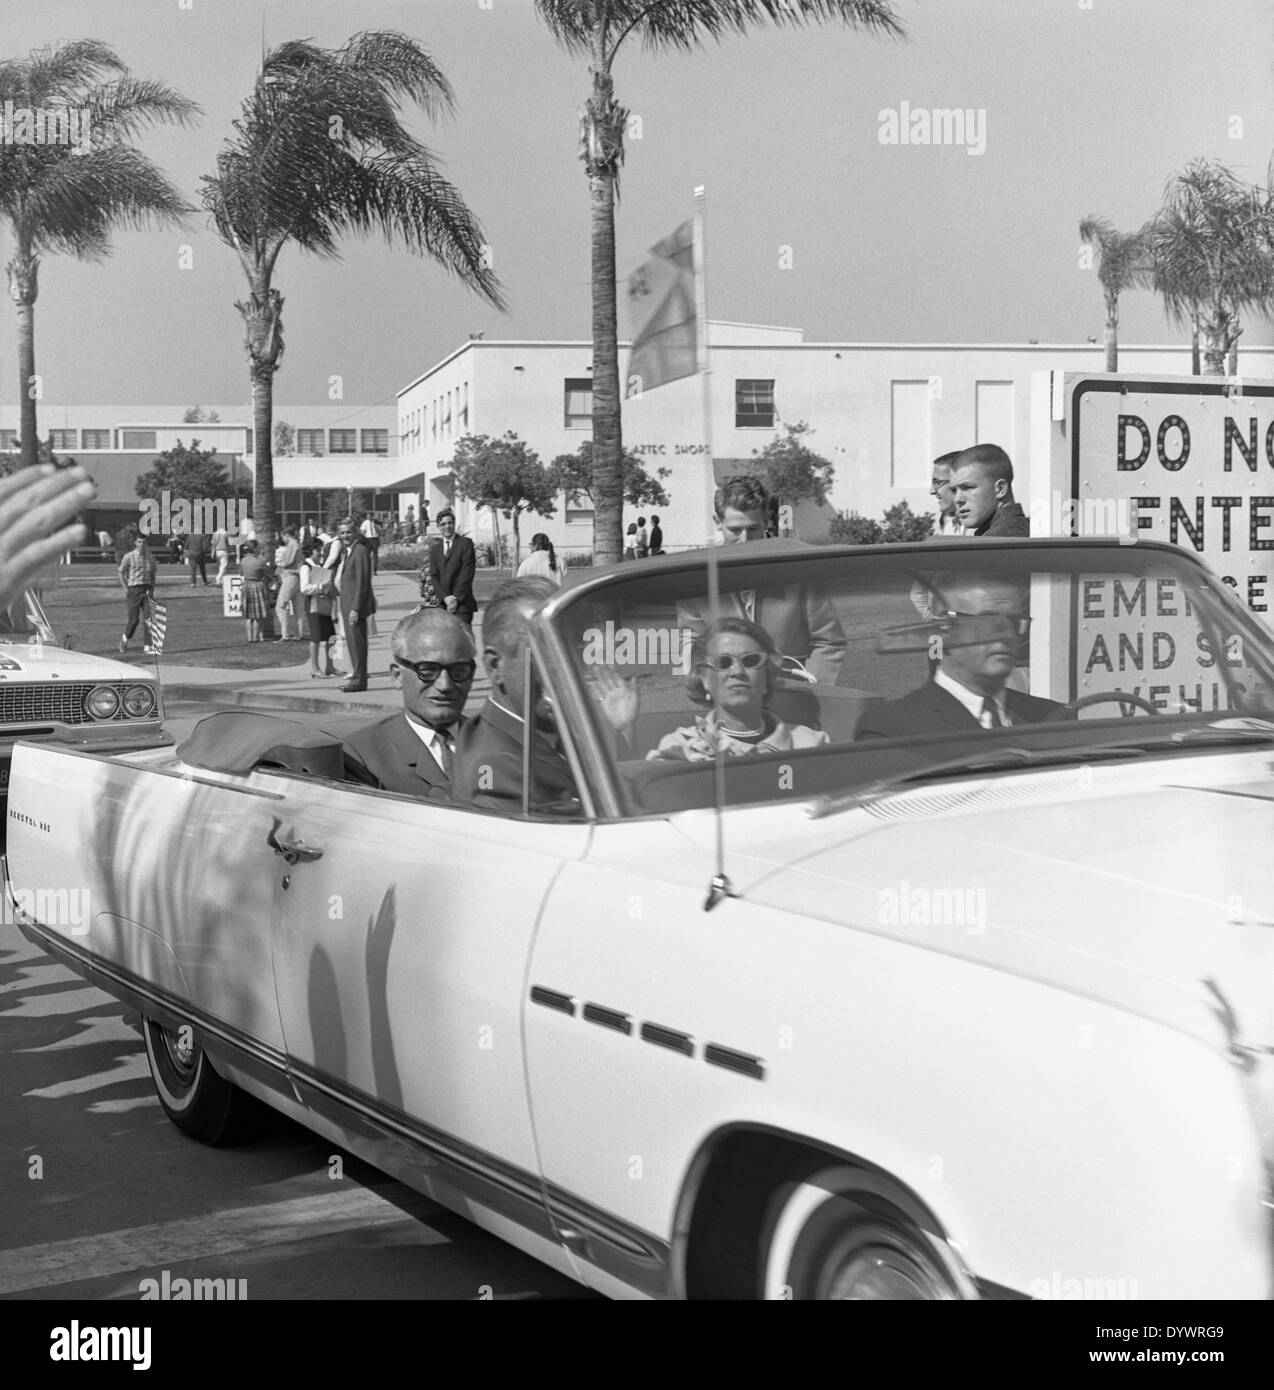 Le sénateur Barry Goldwater et son épouse arrivent à un rassemblement politique à San Diego, Californie, États-Unis au début des années 1960 Banque D'Images